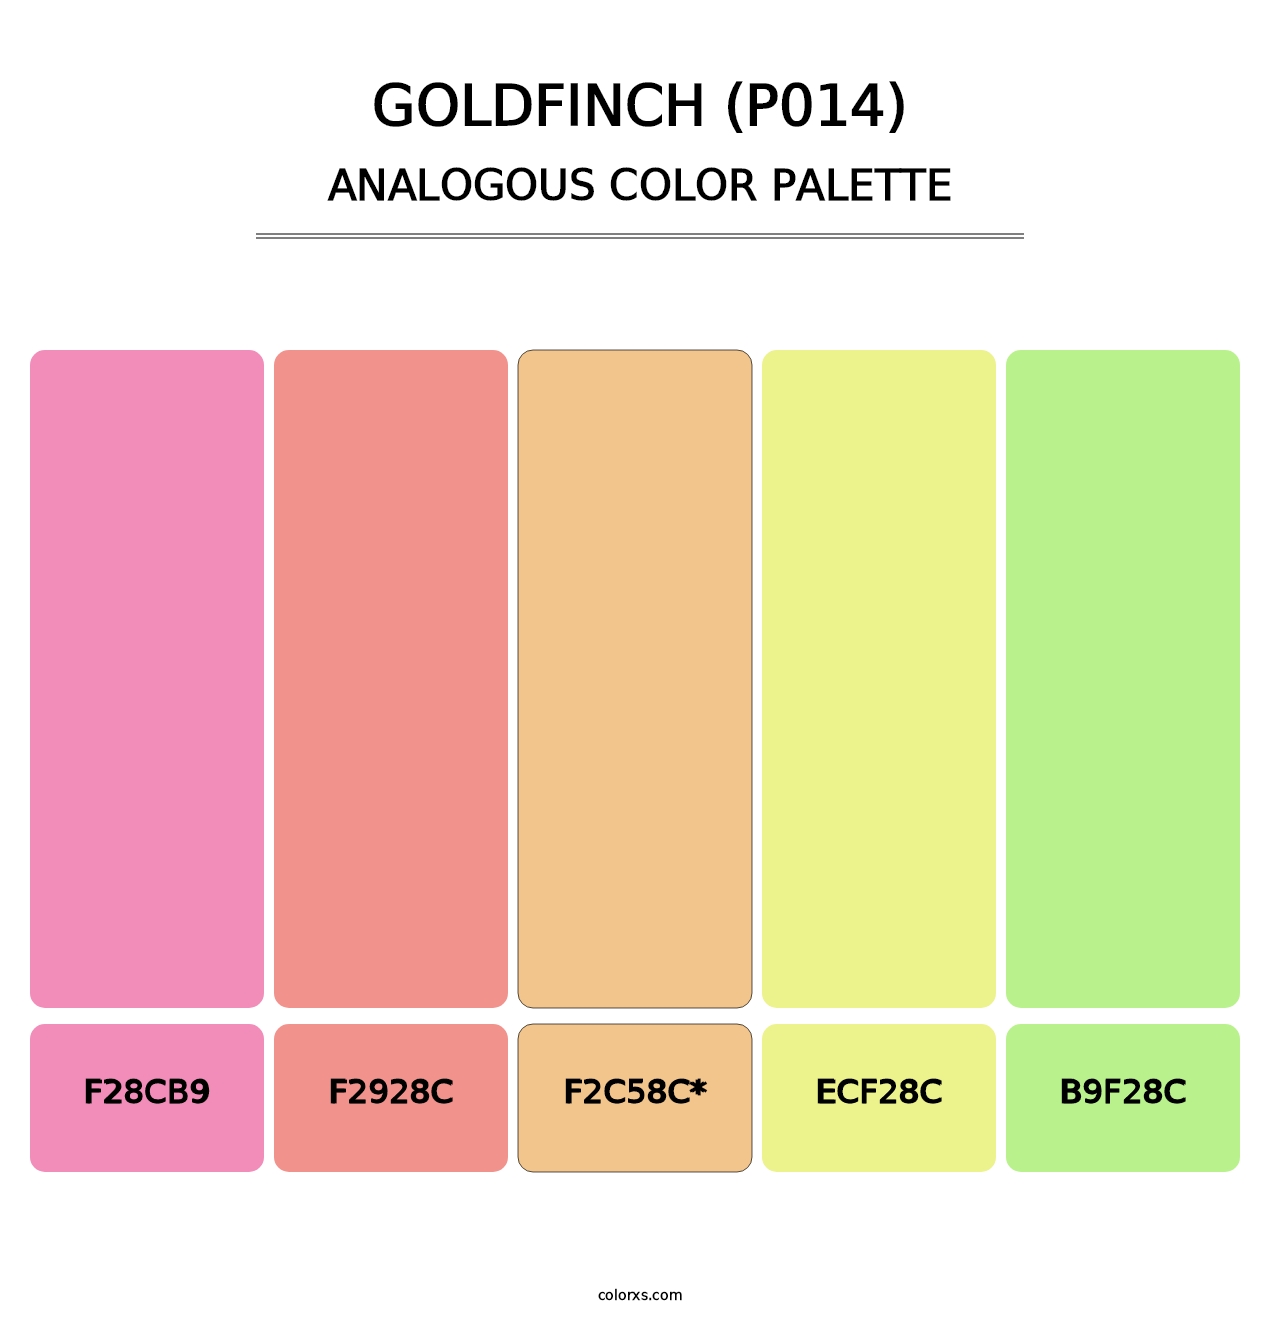 Goldfinch (P014) - Analogous Color Palette